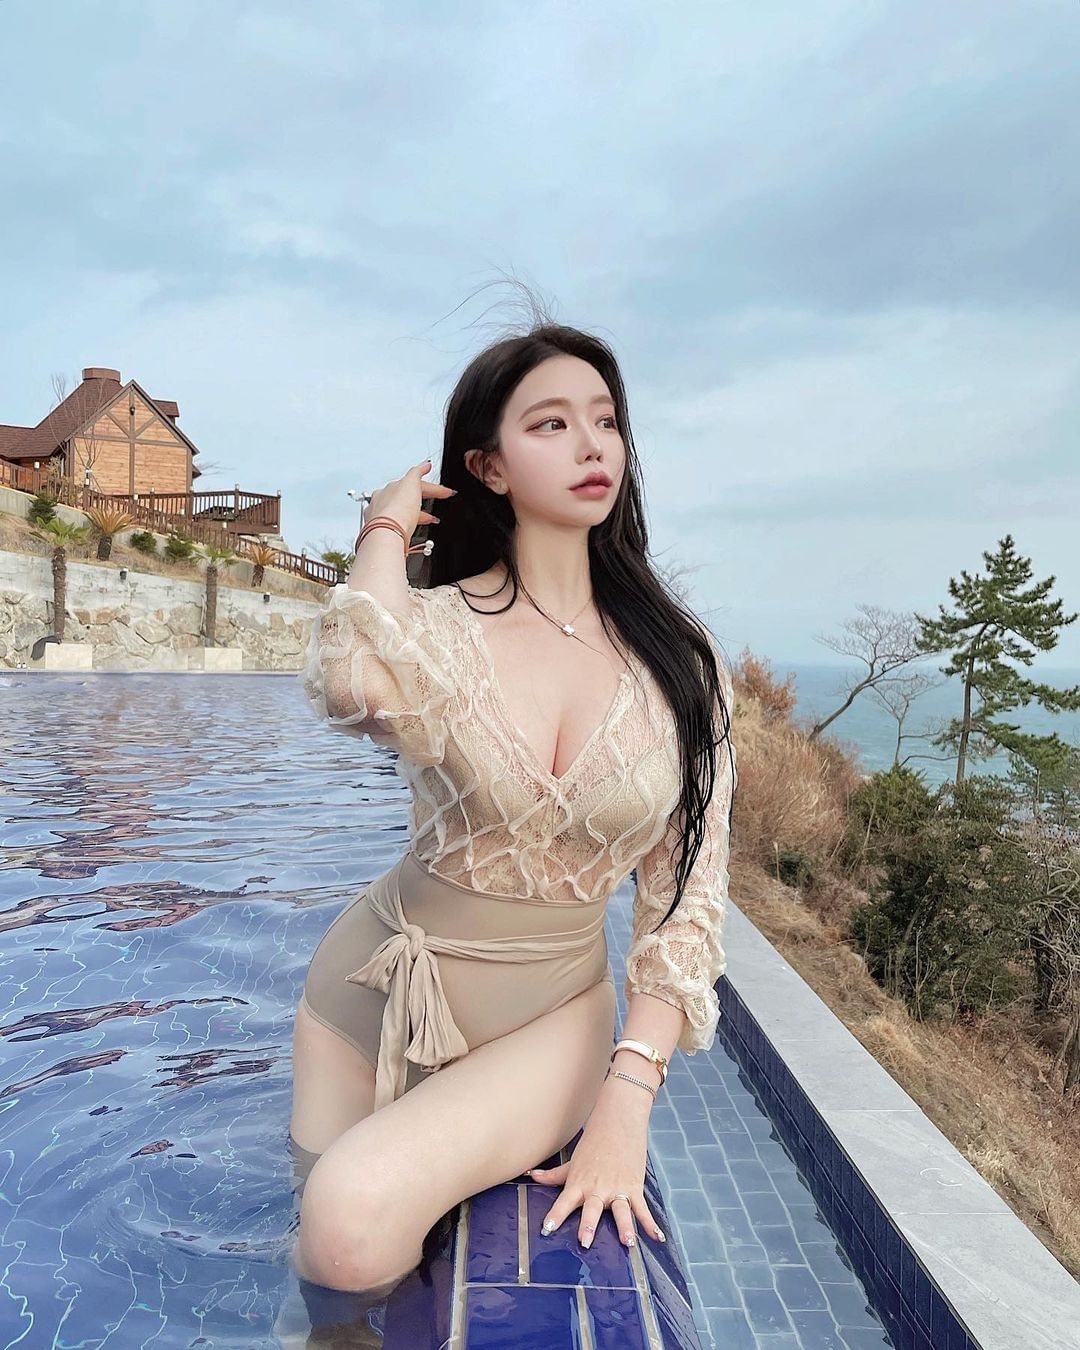 Phái đẹp Hàn Quốc mê mệt kiểu áo tắm giúp gợi cảm gấp bội khi ở dưới nước - 9